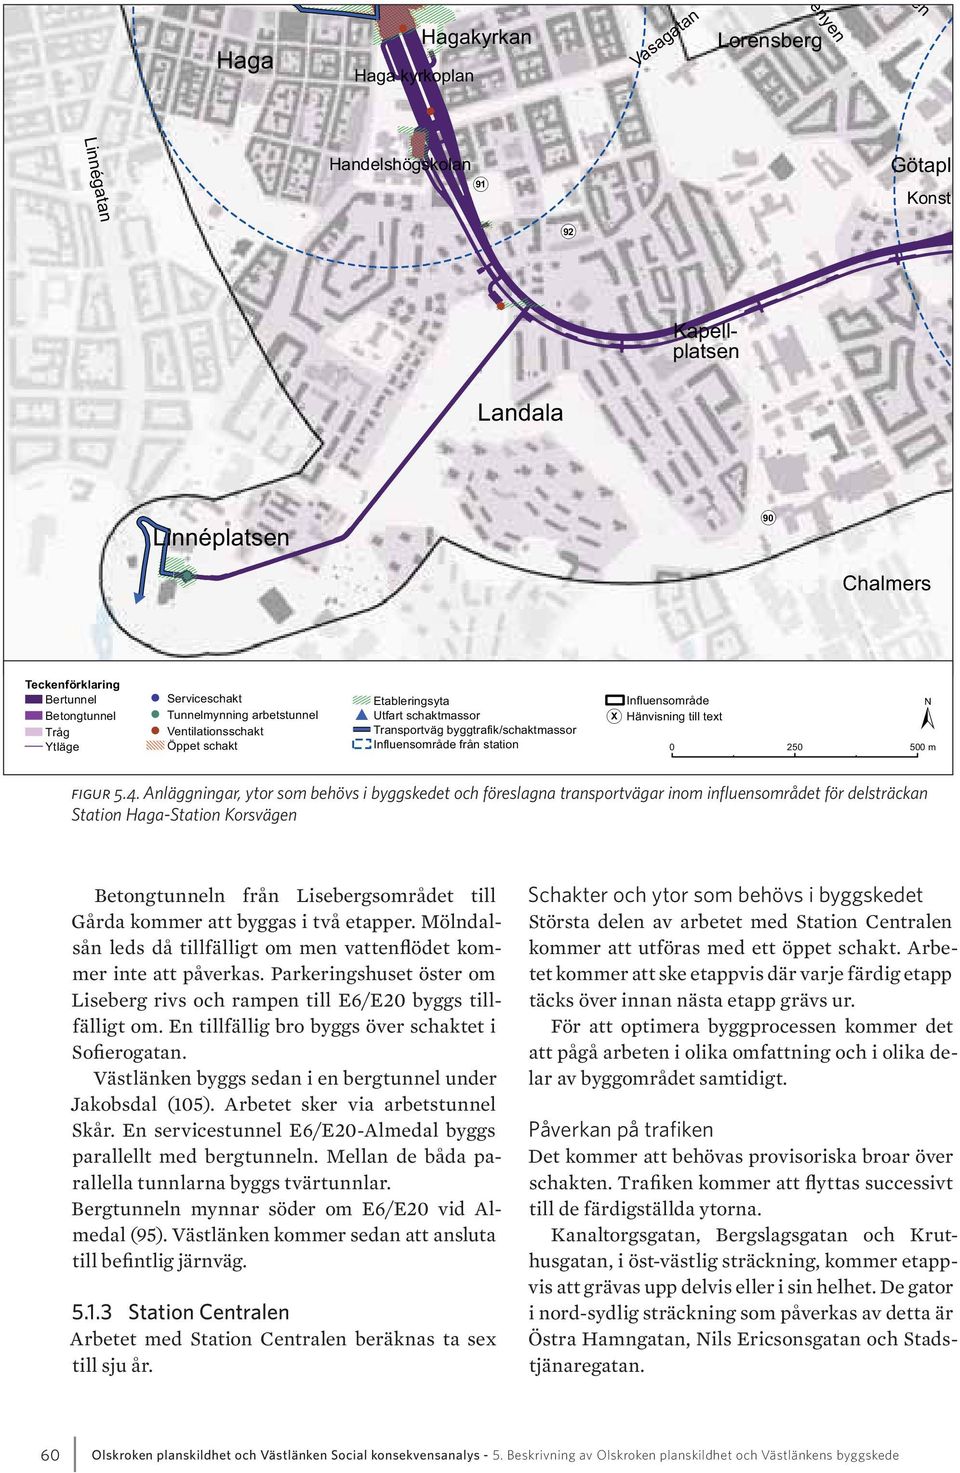 Kanaltorgsgatan, Bergslagsgatan och Kruthusgatan, i öst-västlig sträckning, kommer etappvis att grävas upp delvis eller i sin helhet.